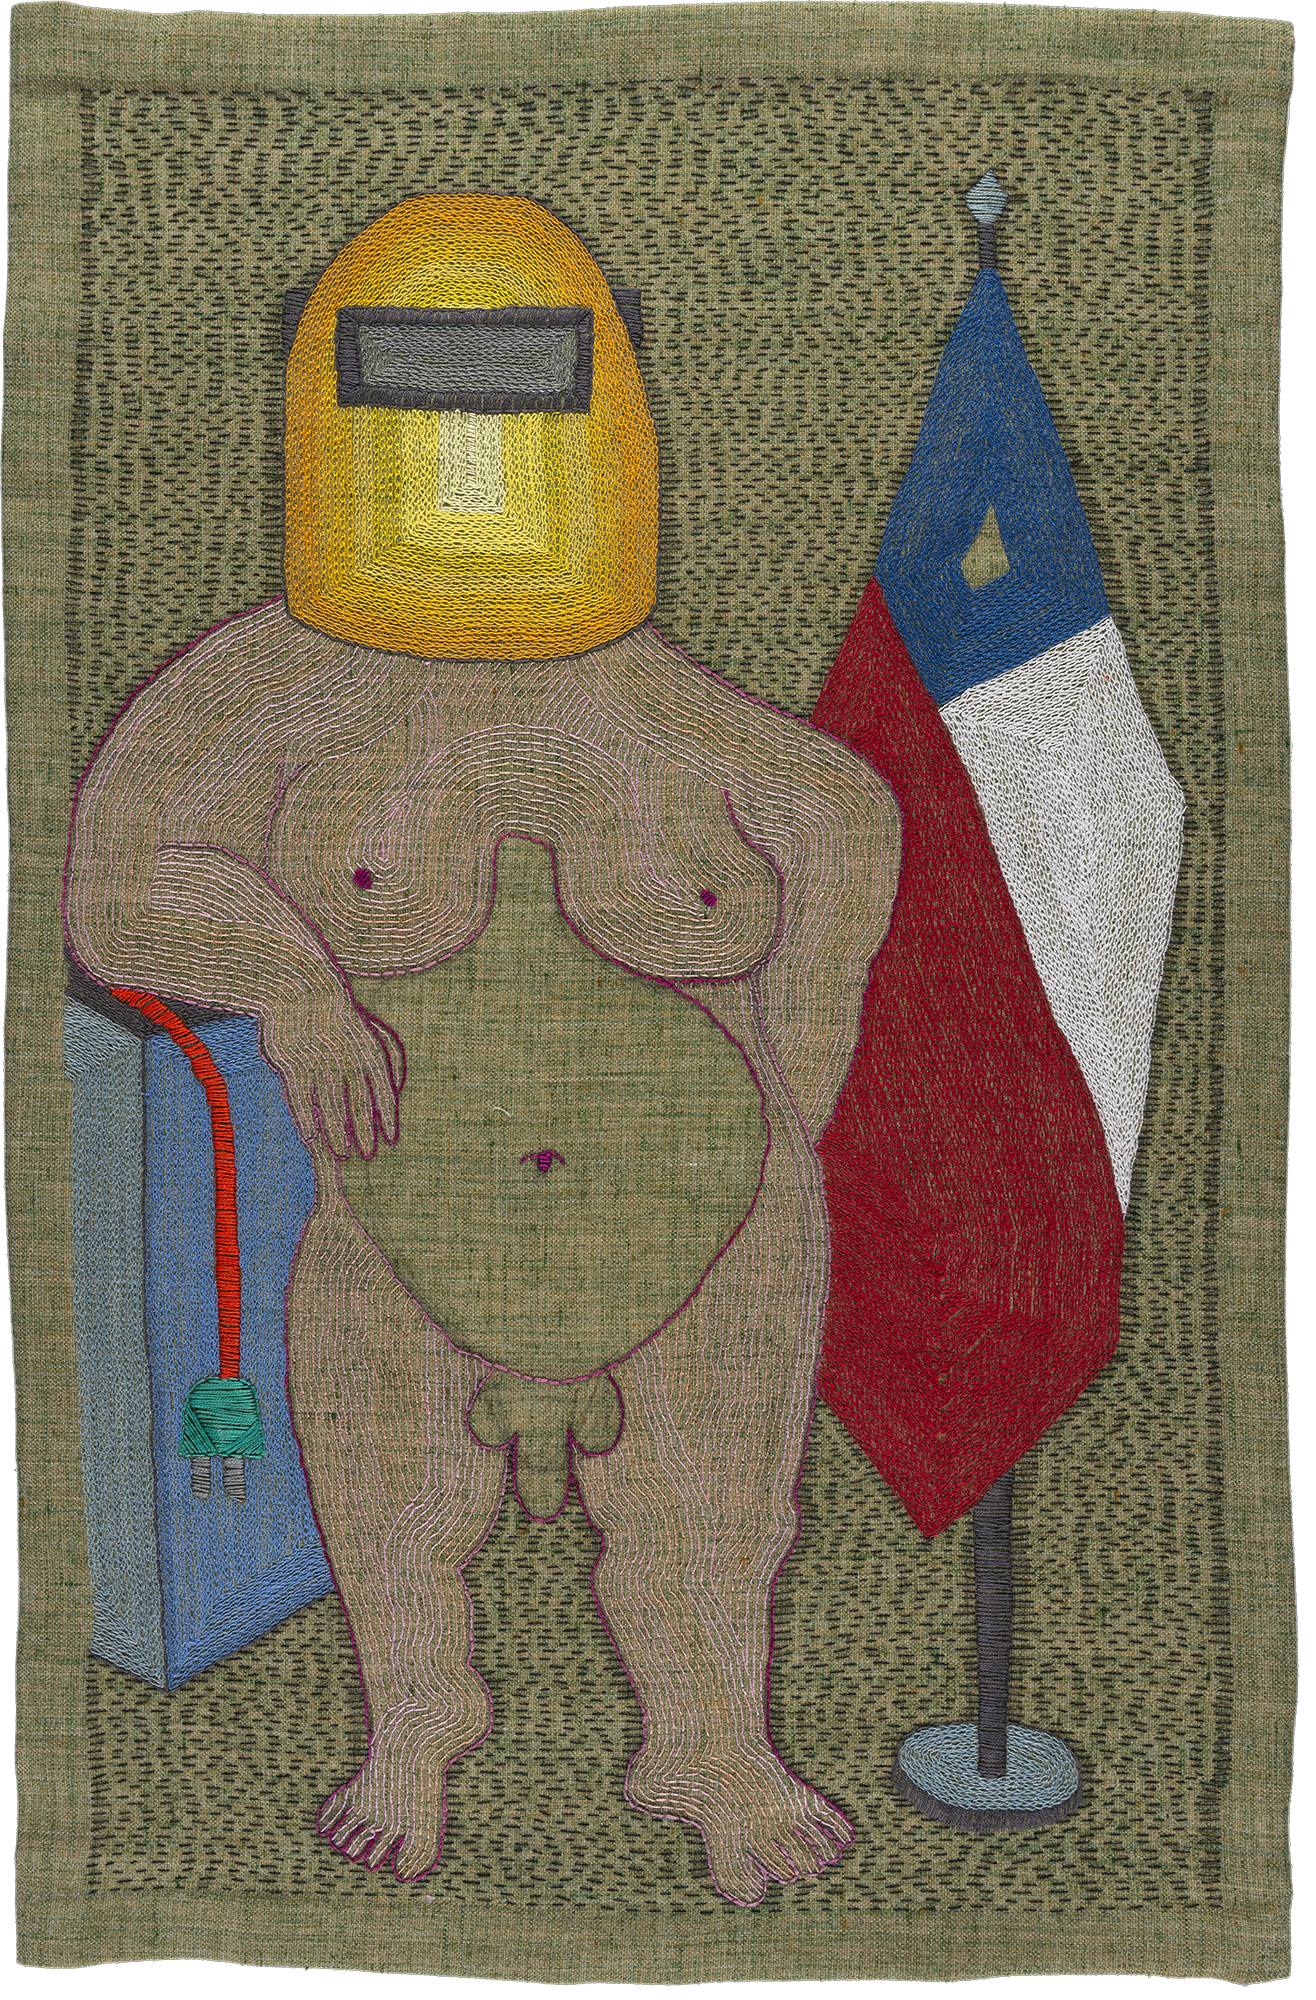 Paloma Castillo, Conferencia, 2020, bordado a mano con hilos de algodón sobre lino, 66 x 42 cm. Cortesía: Isabel Croxatto Galería